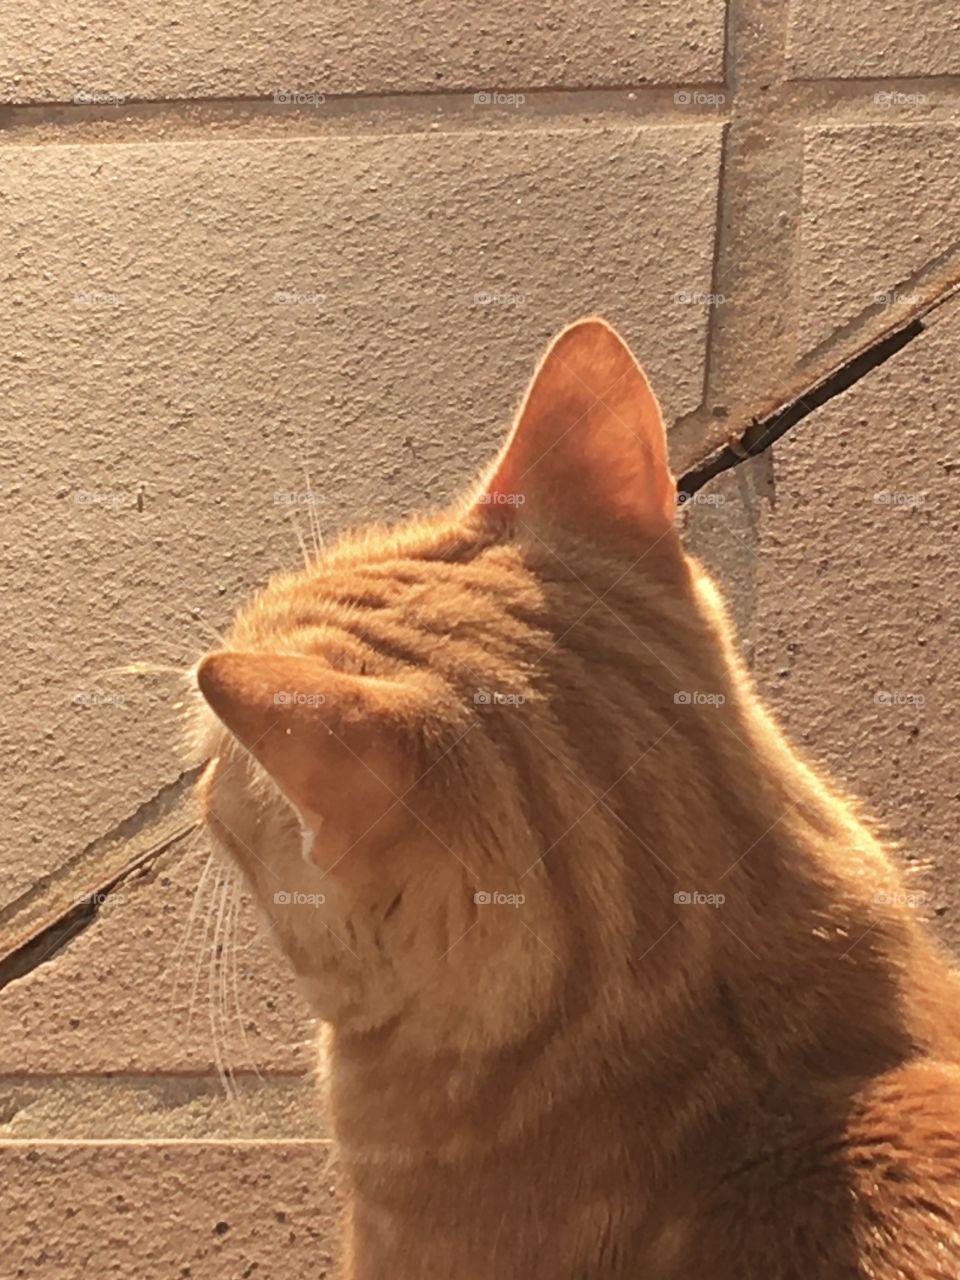 Sunlight on the ginger cat’s fur